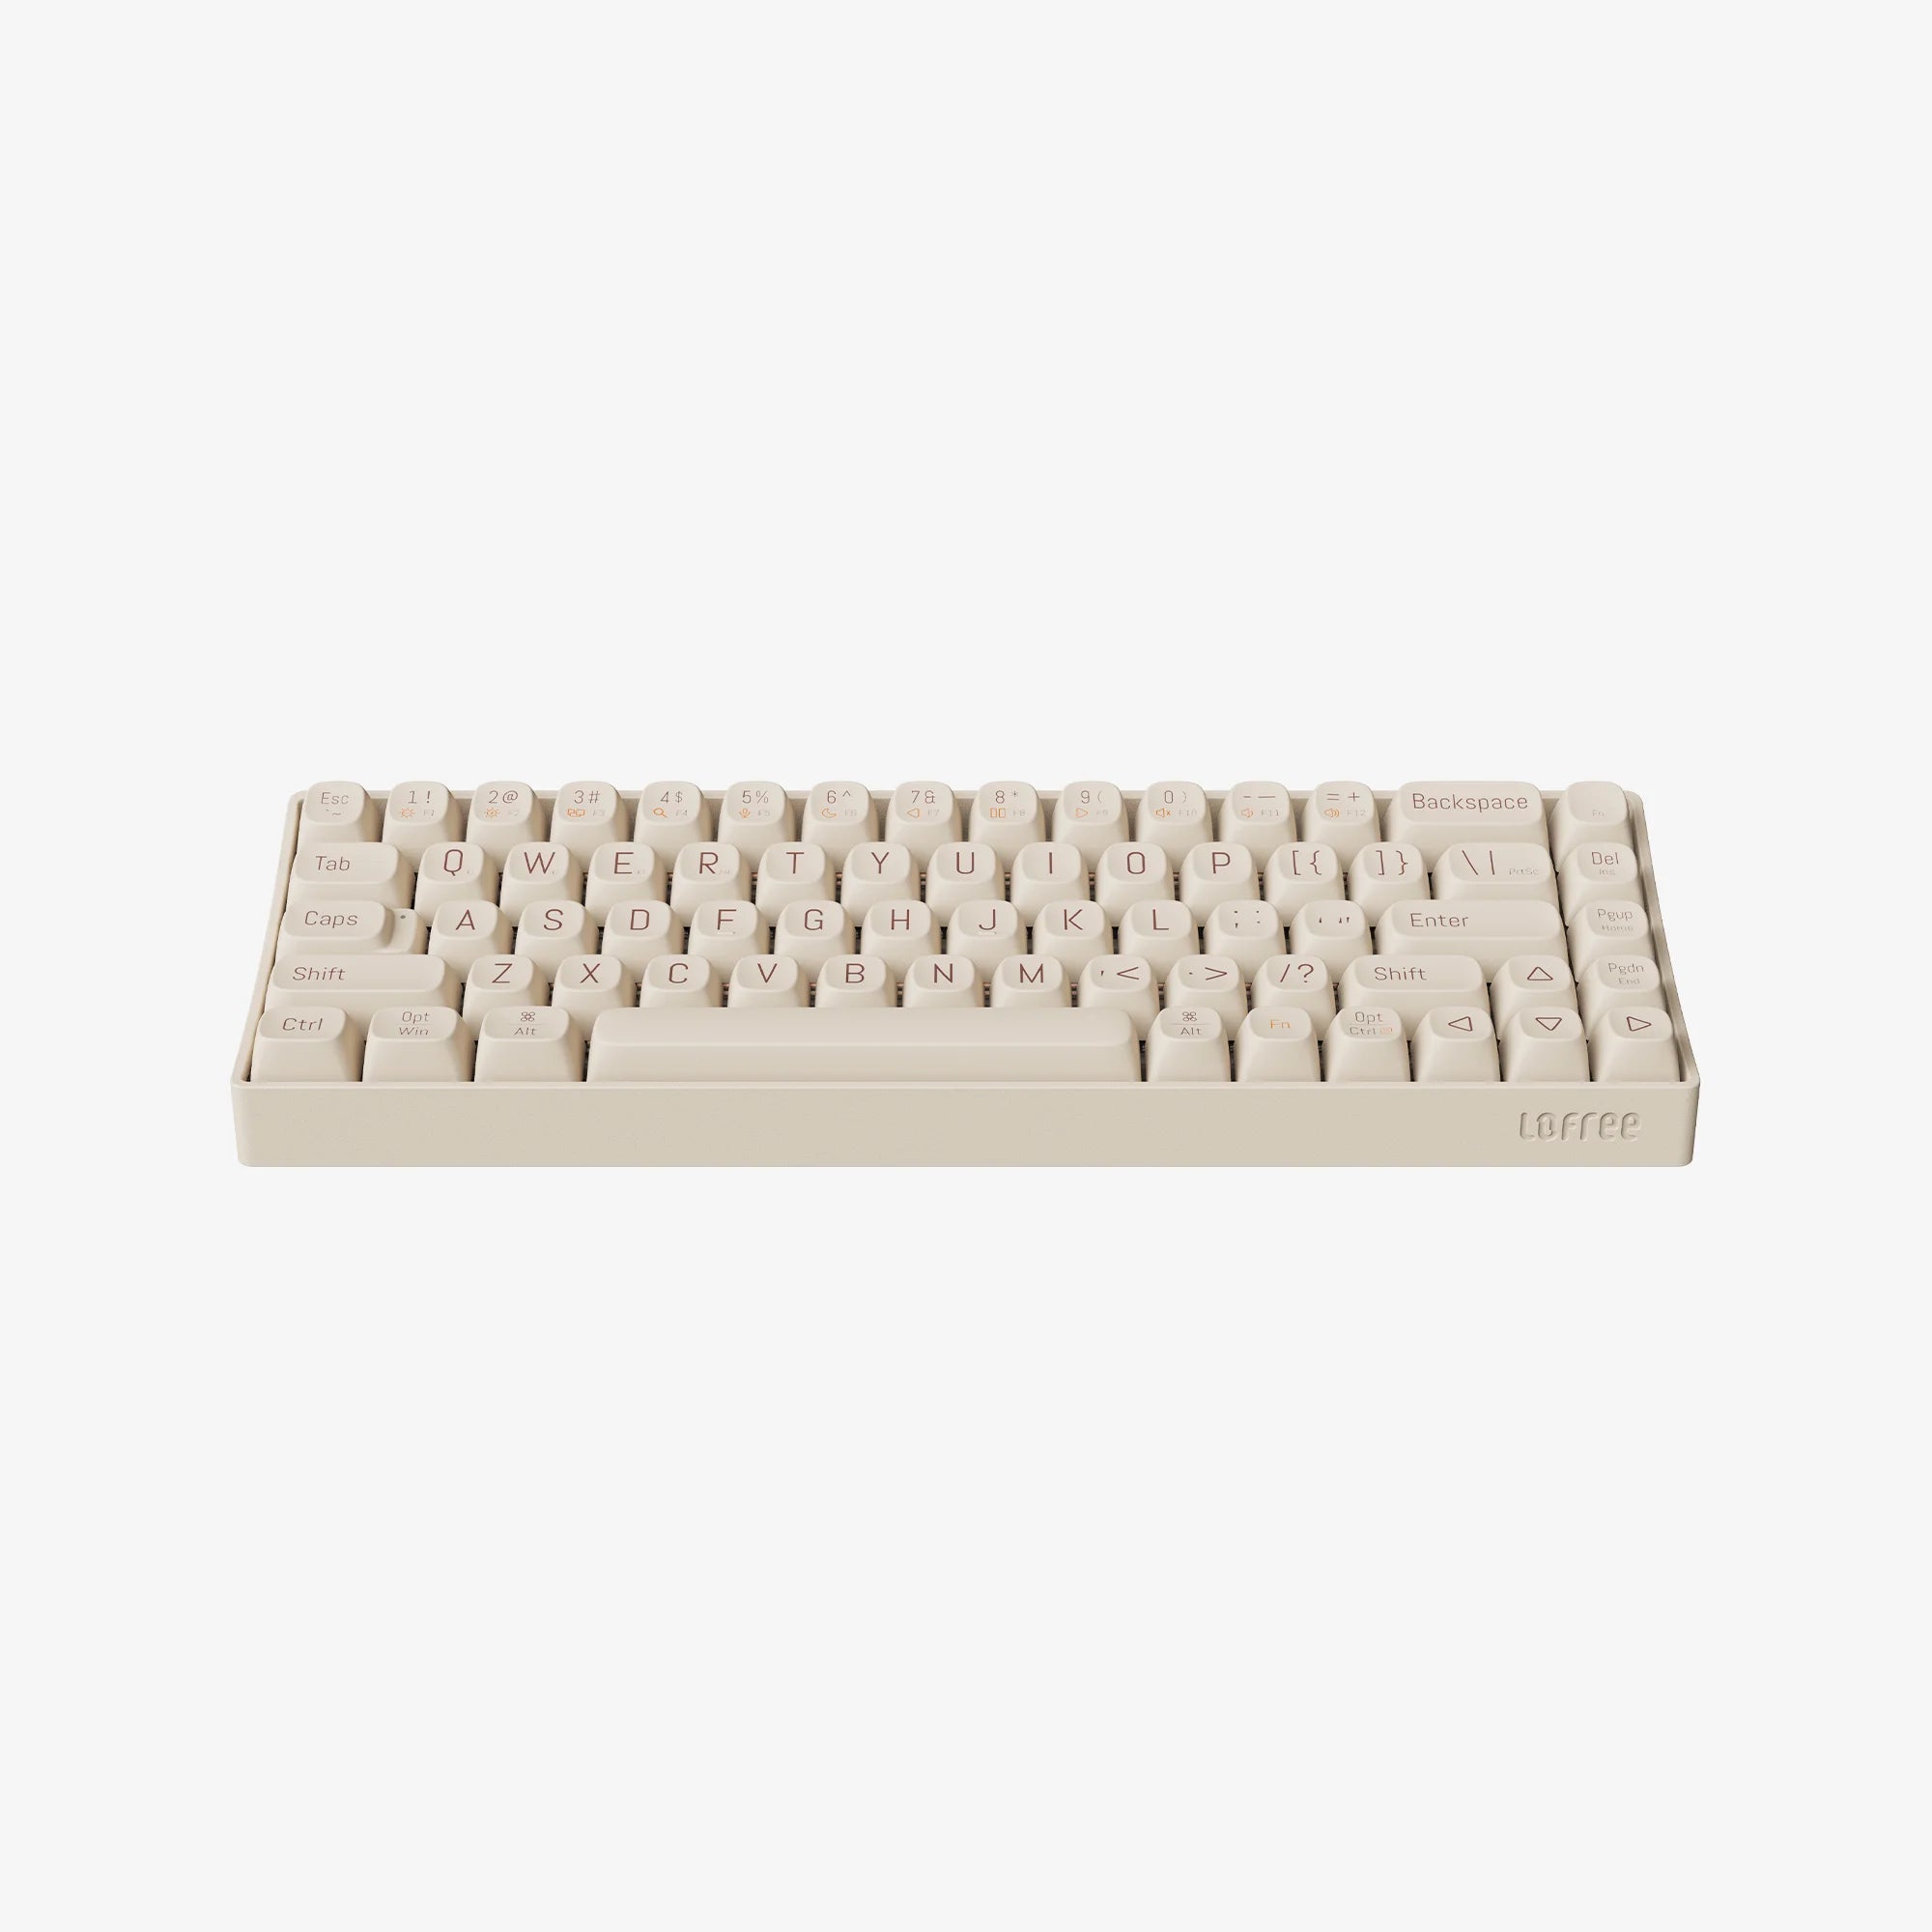 Tofu68 Mechanical Keyboard